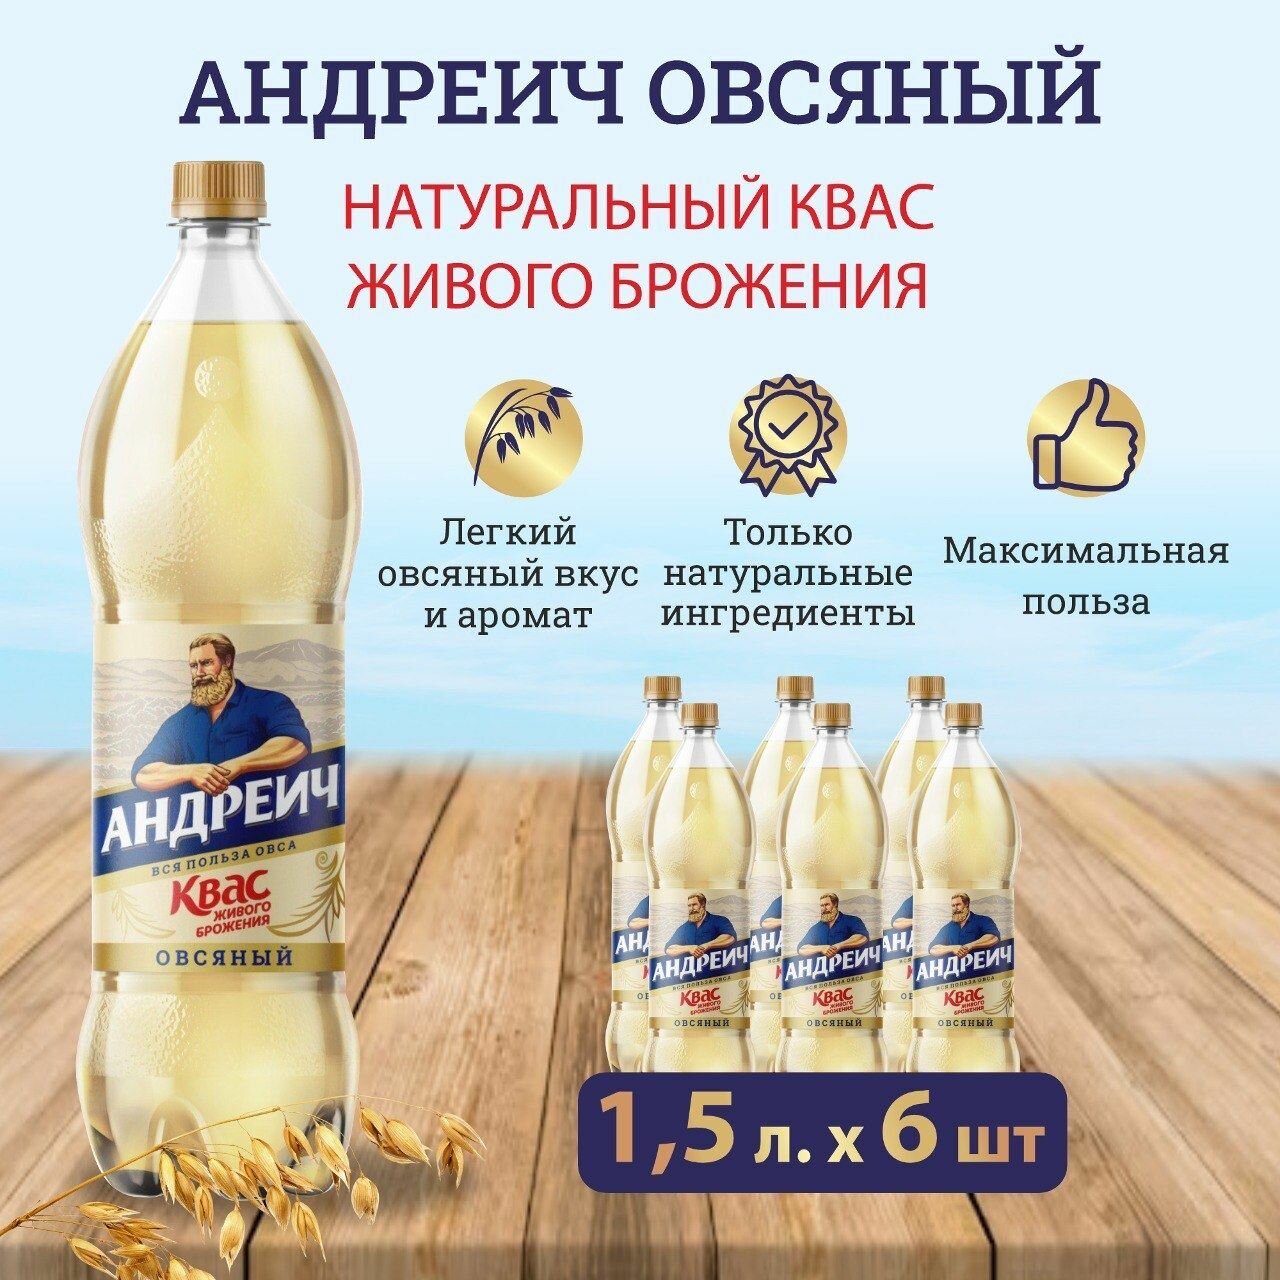 Квас Андреич "Овсяный", 1,5 л х 6 шт.